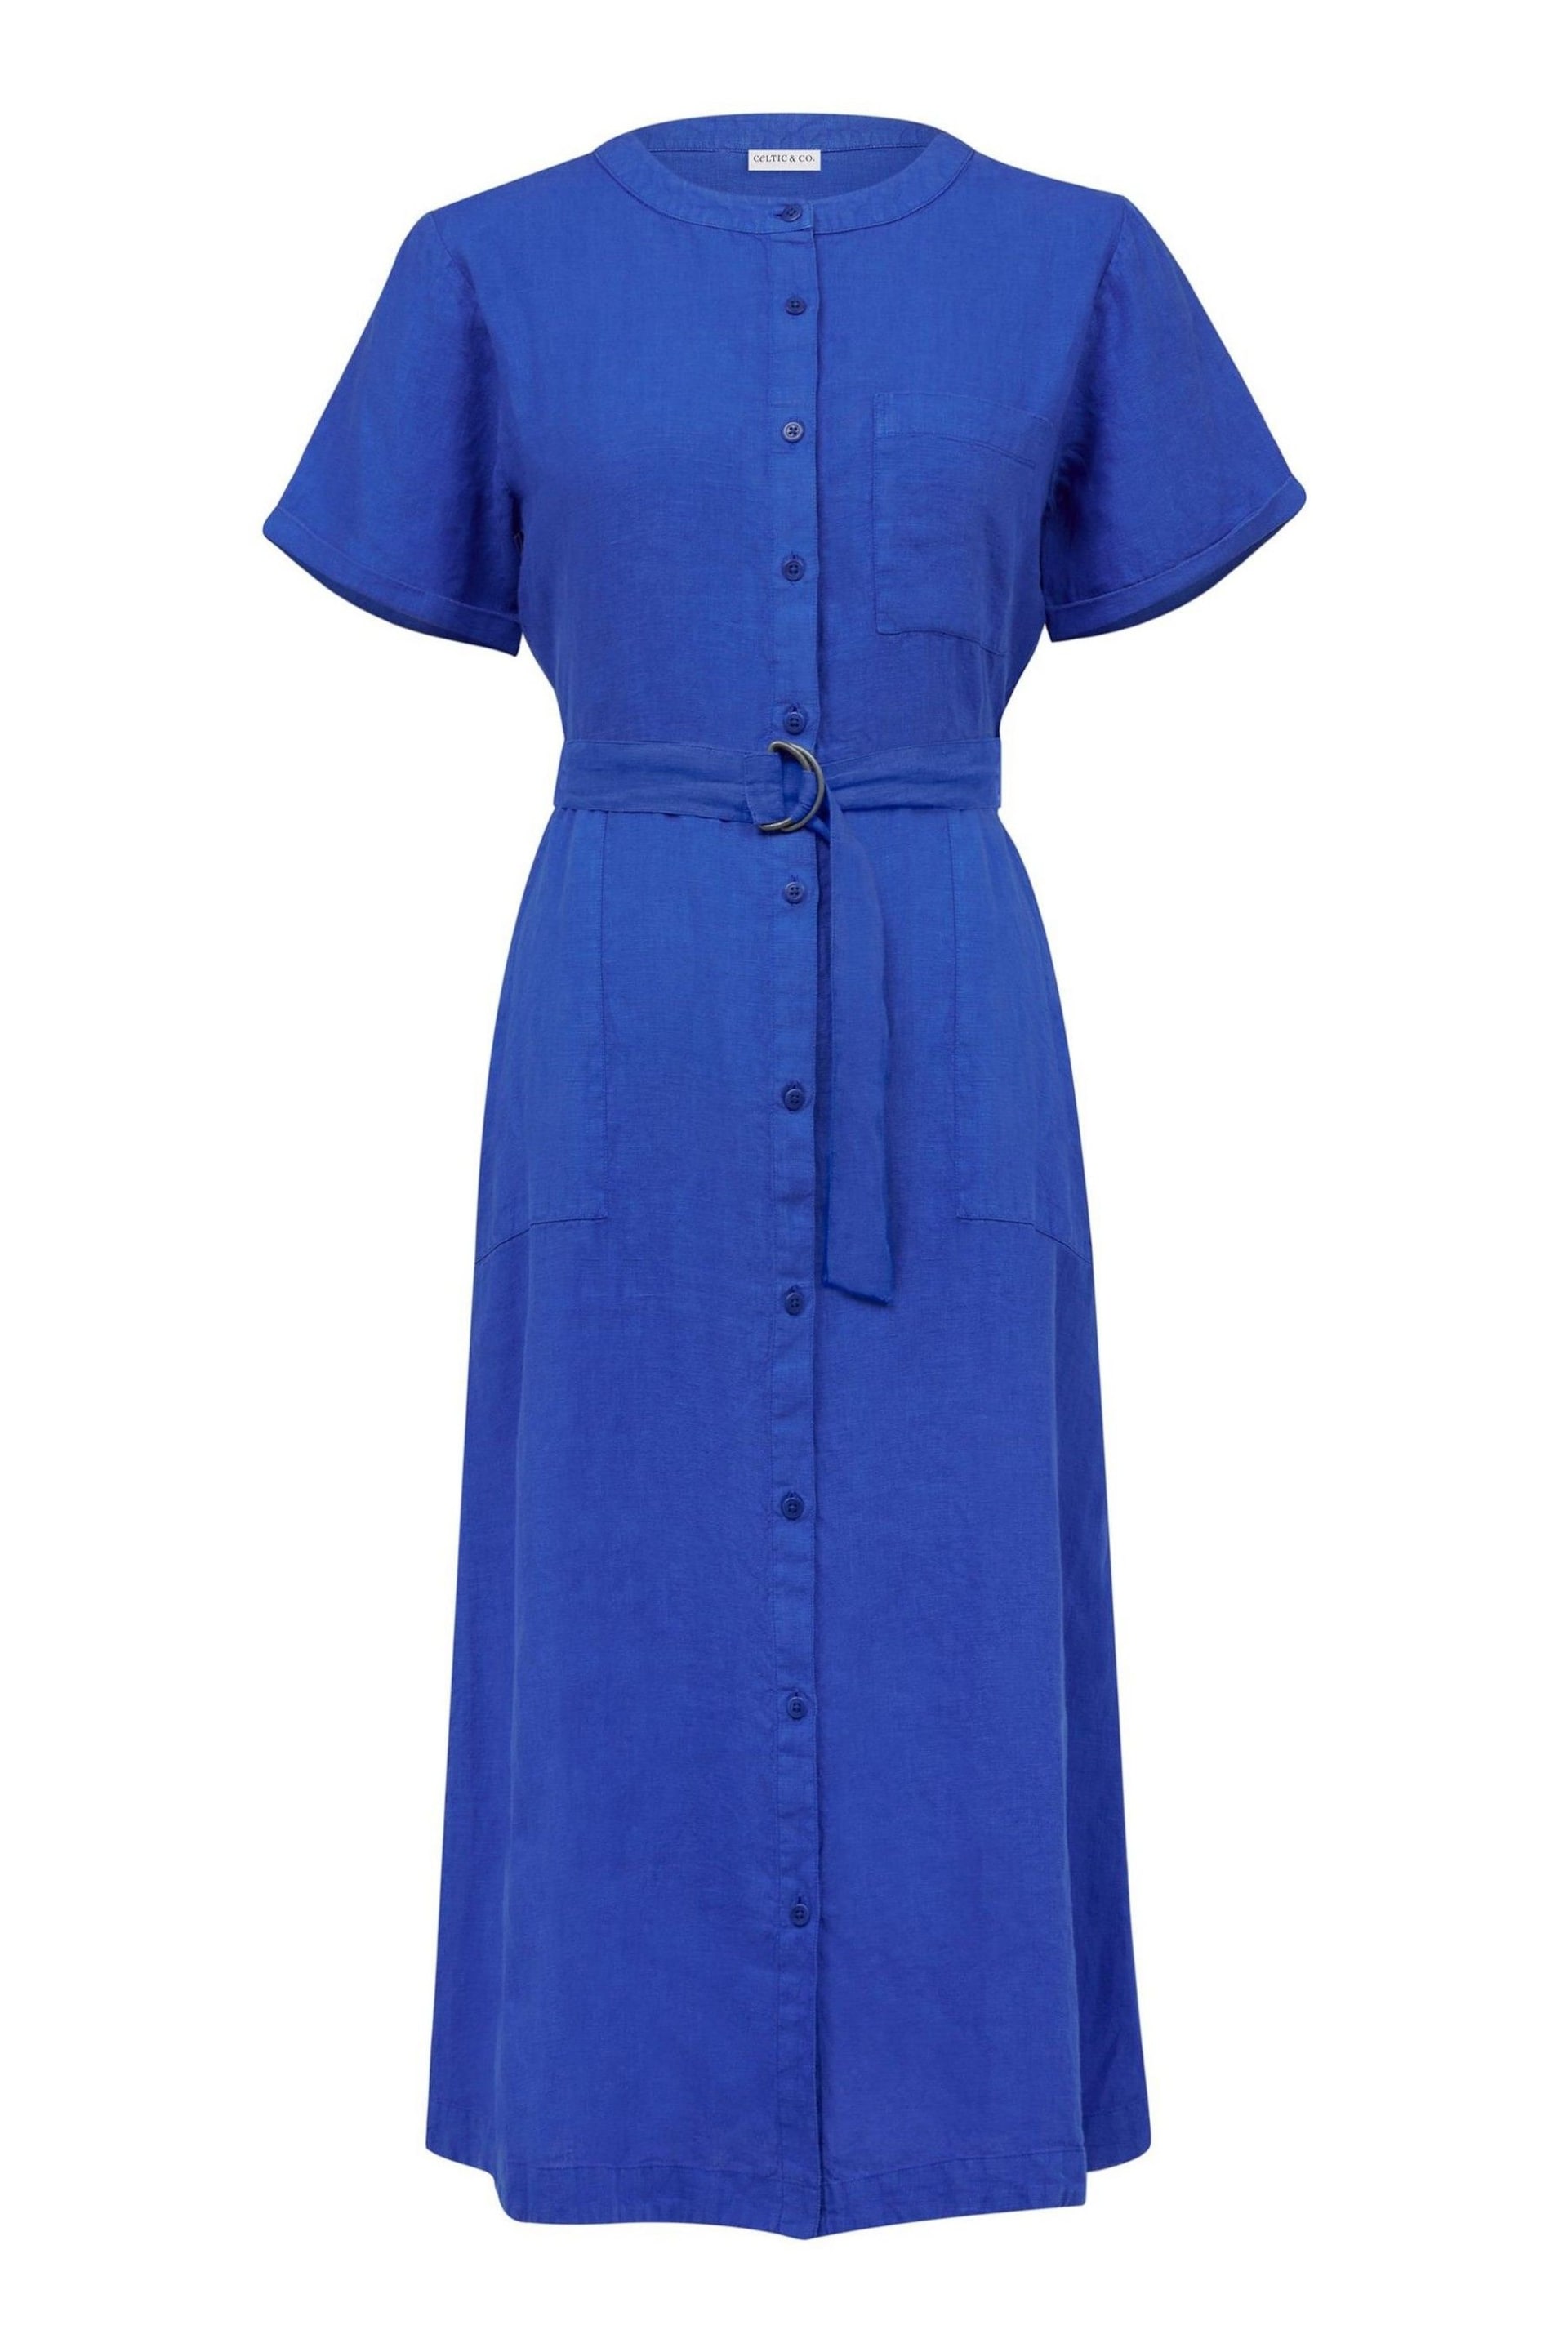 Celtic & Co. Blue Linen Button Through Dress - Image 3 of 7